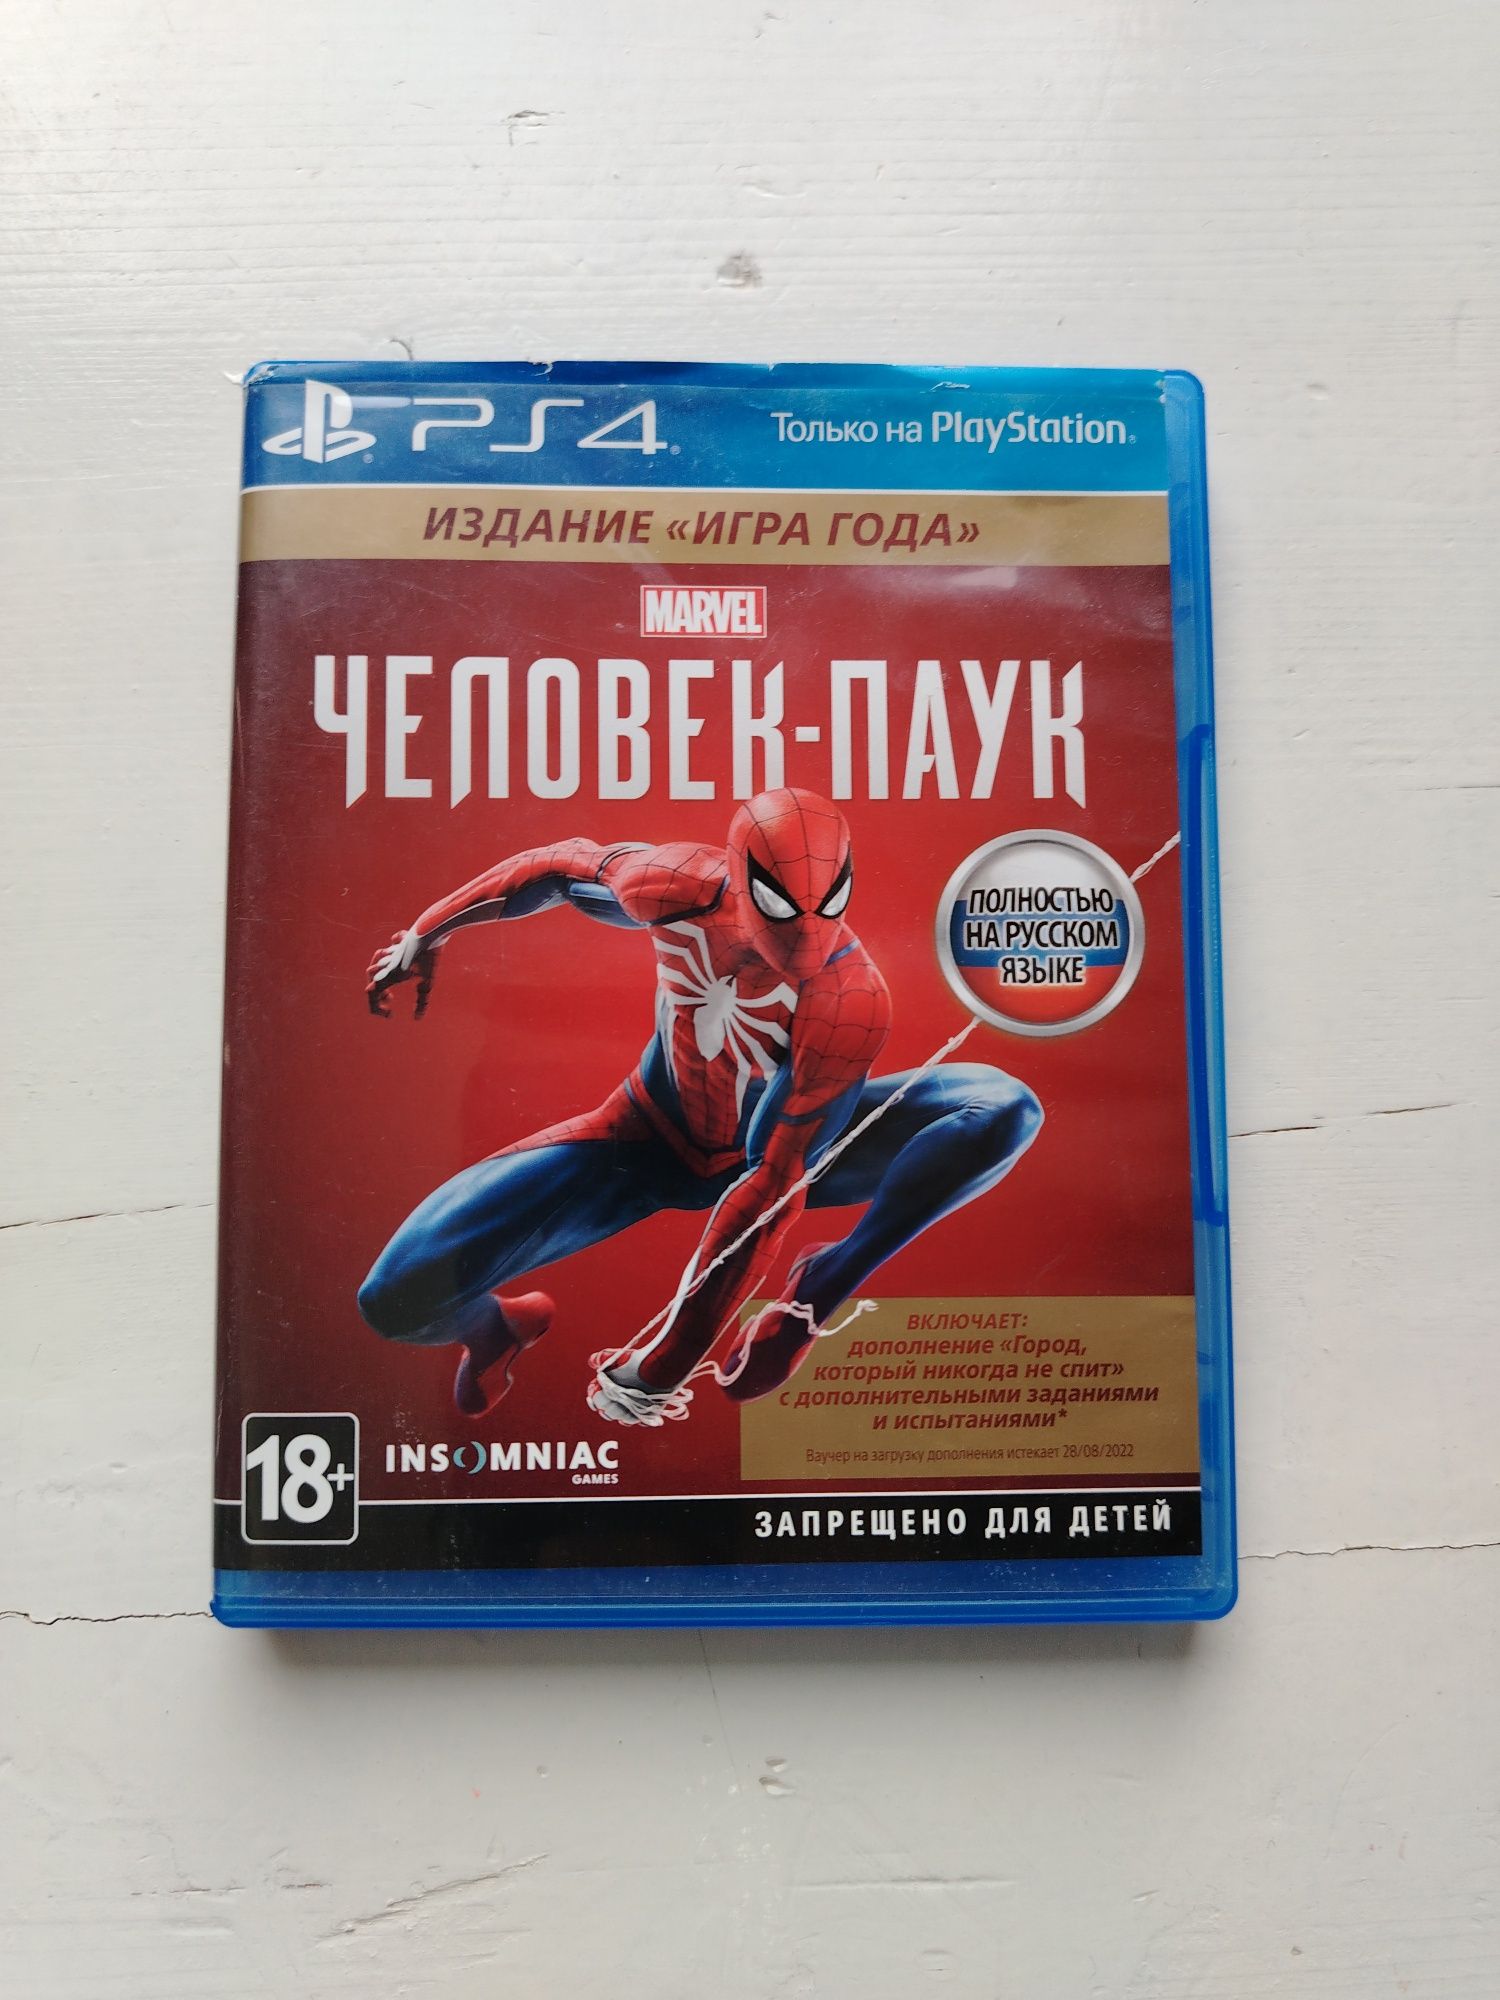 Диск "Человек паук" на PlayStation 4